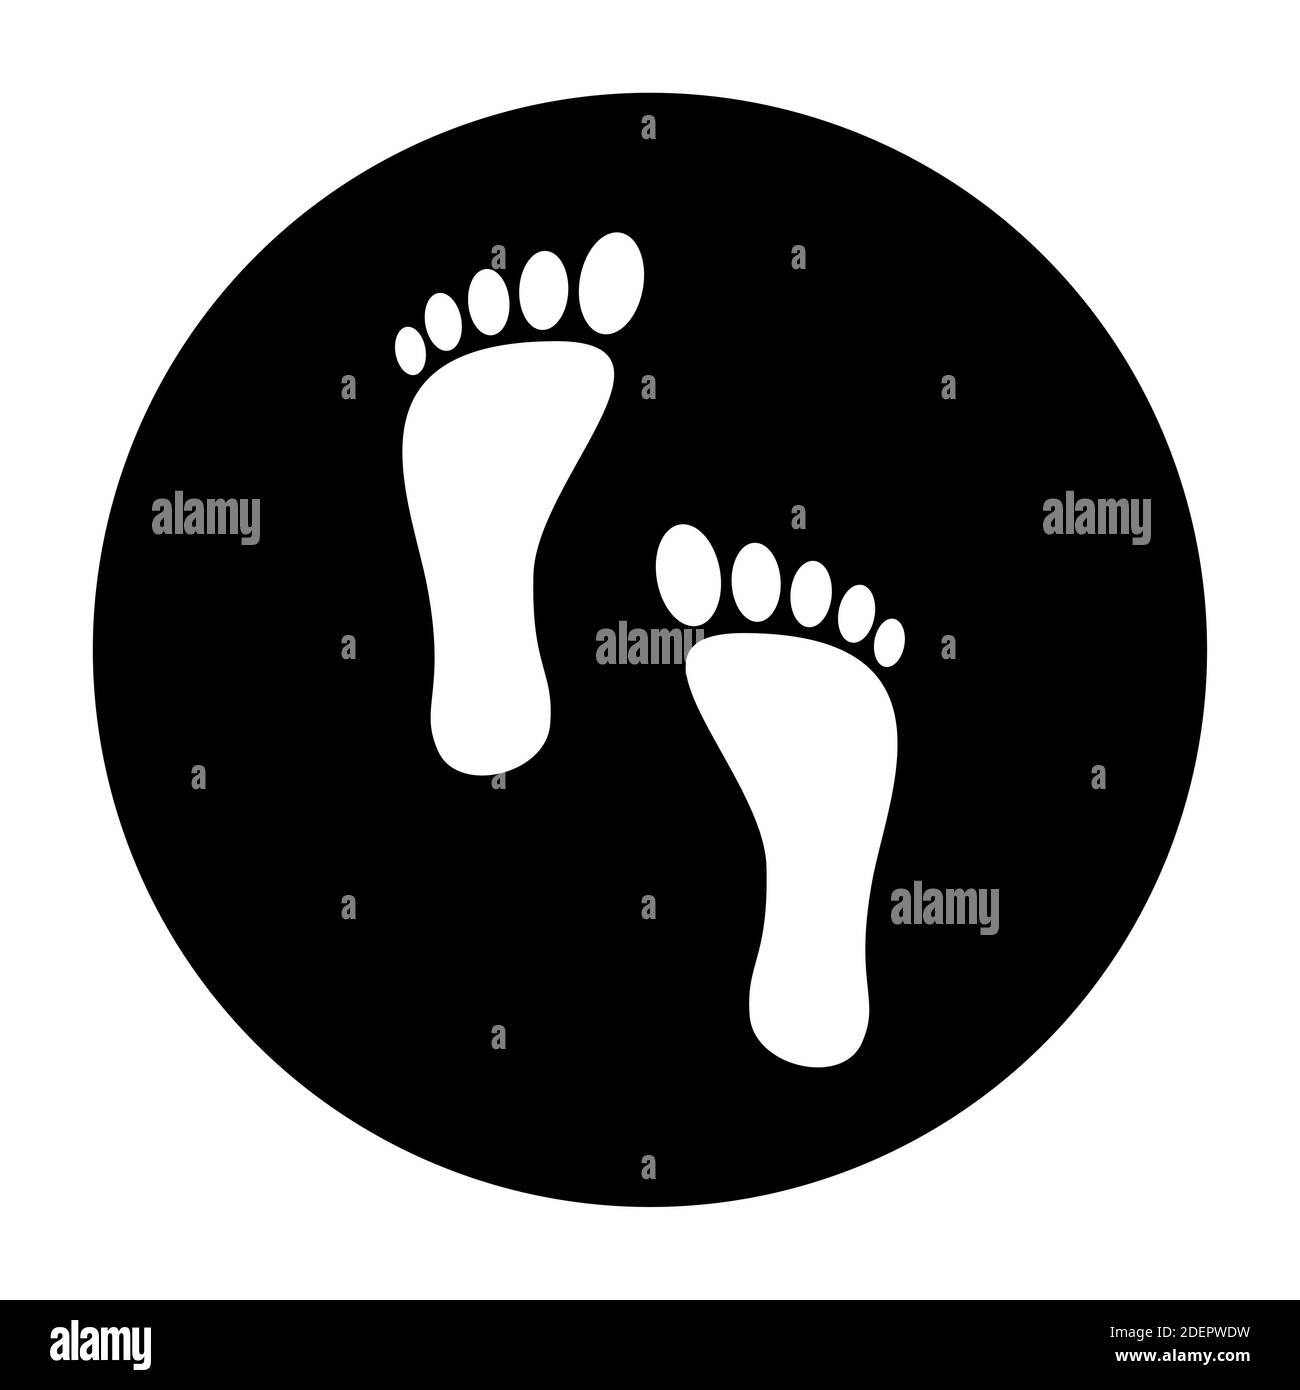 Warten Sie hier, halten Sie Ihre Distanz und üben Sie das Symbol für die soziale Distanzierung von Bodenmarkierungen mit Fußabdrücken für Warteschlangenlinien. Vektorbild. Stock Vektor